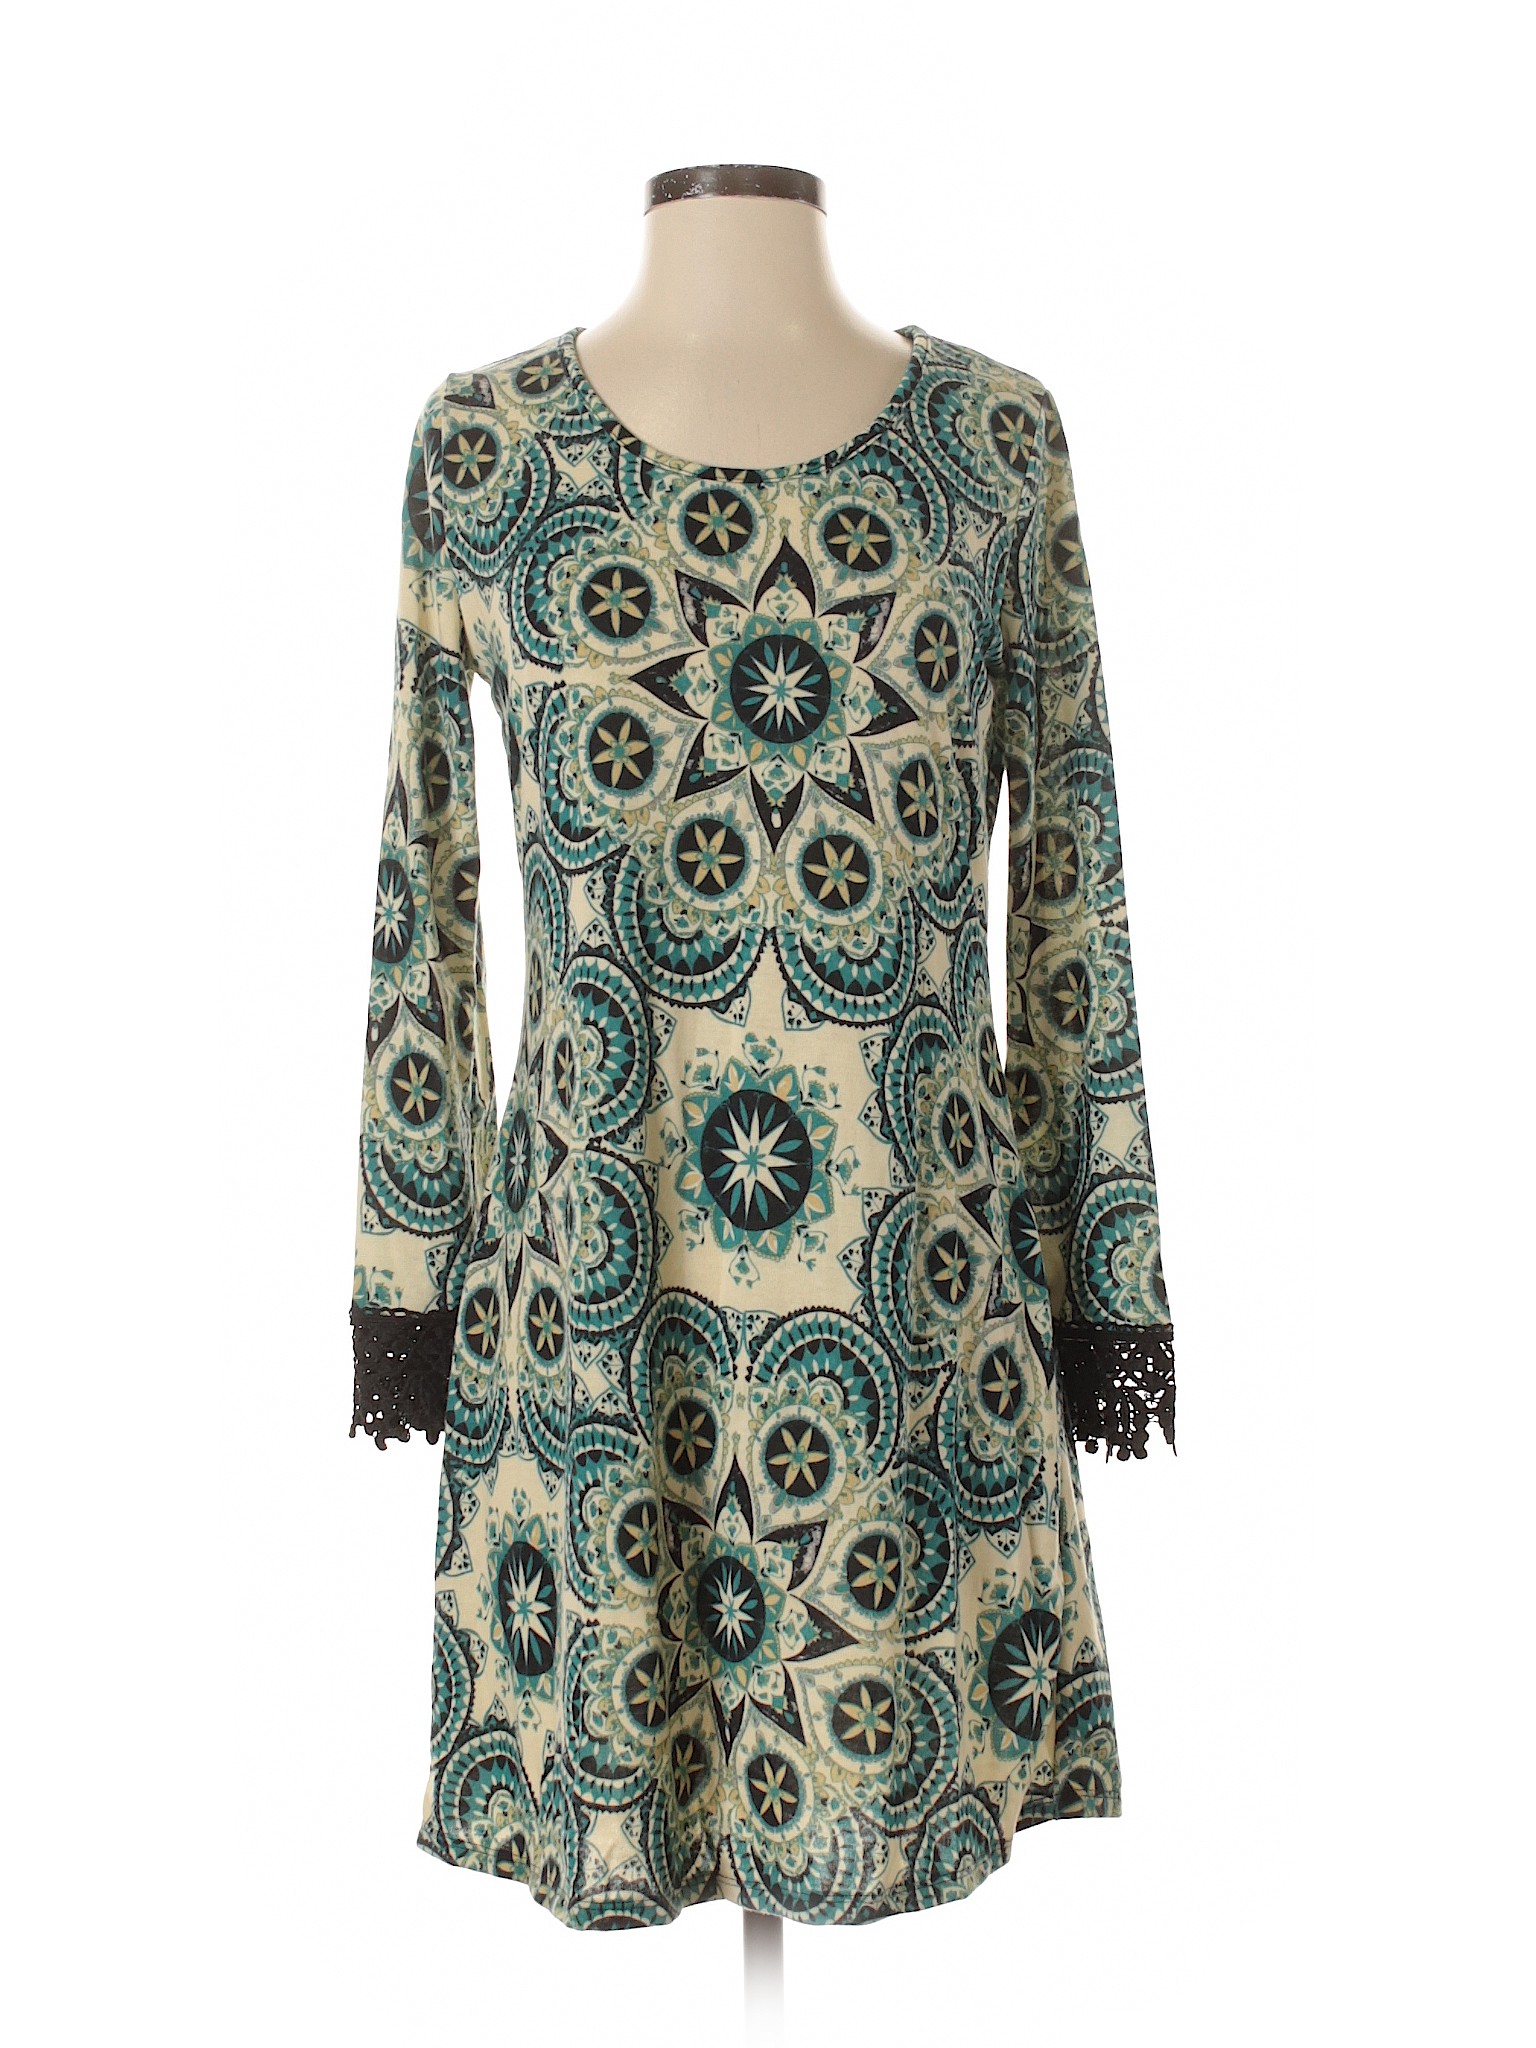 Robert Louis Women Green Casual Dress S | eBay